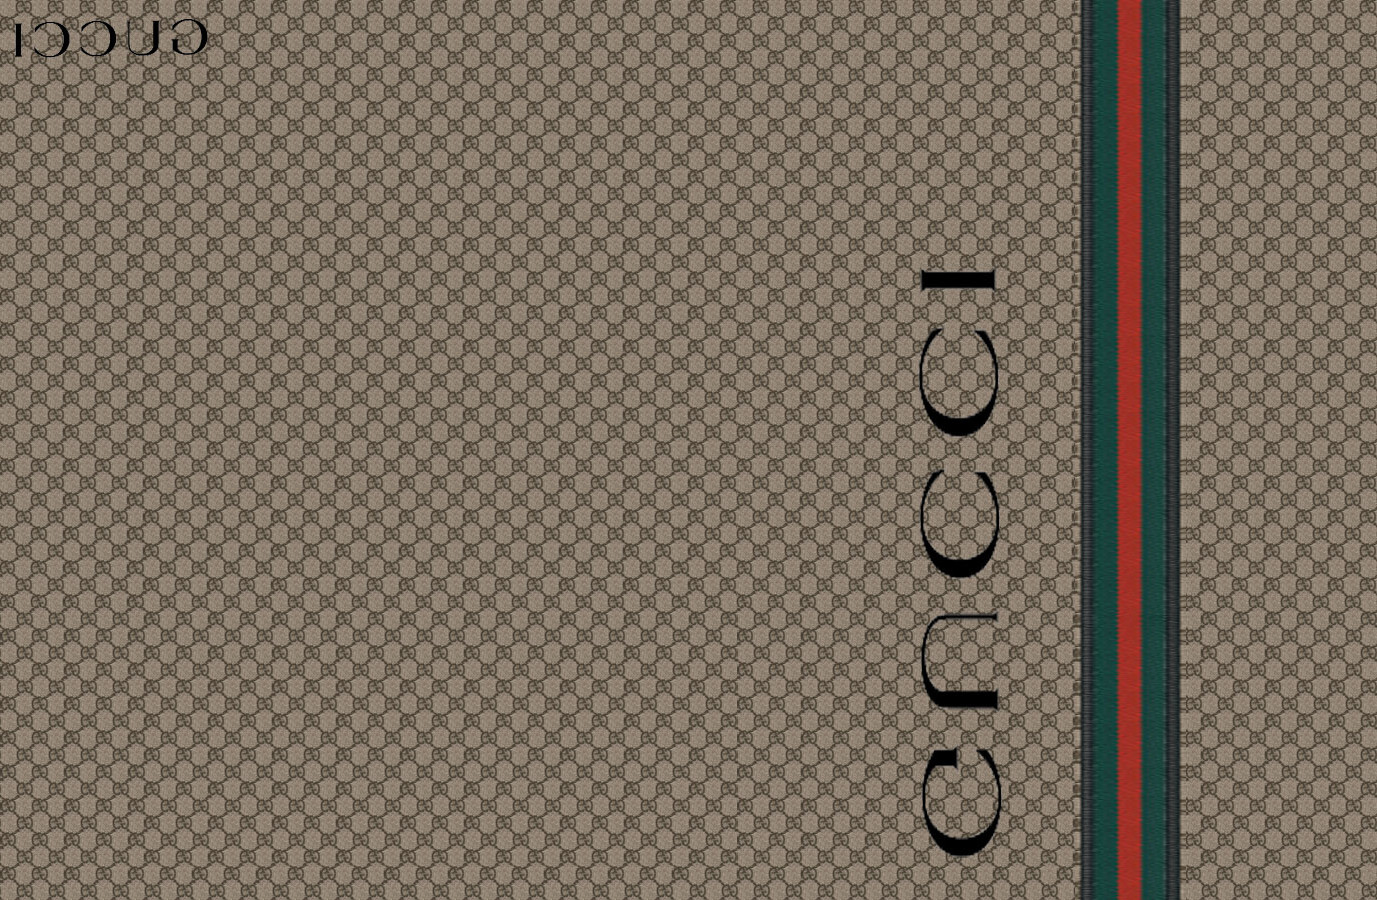 Gucci Wallpaper Logo